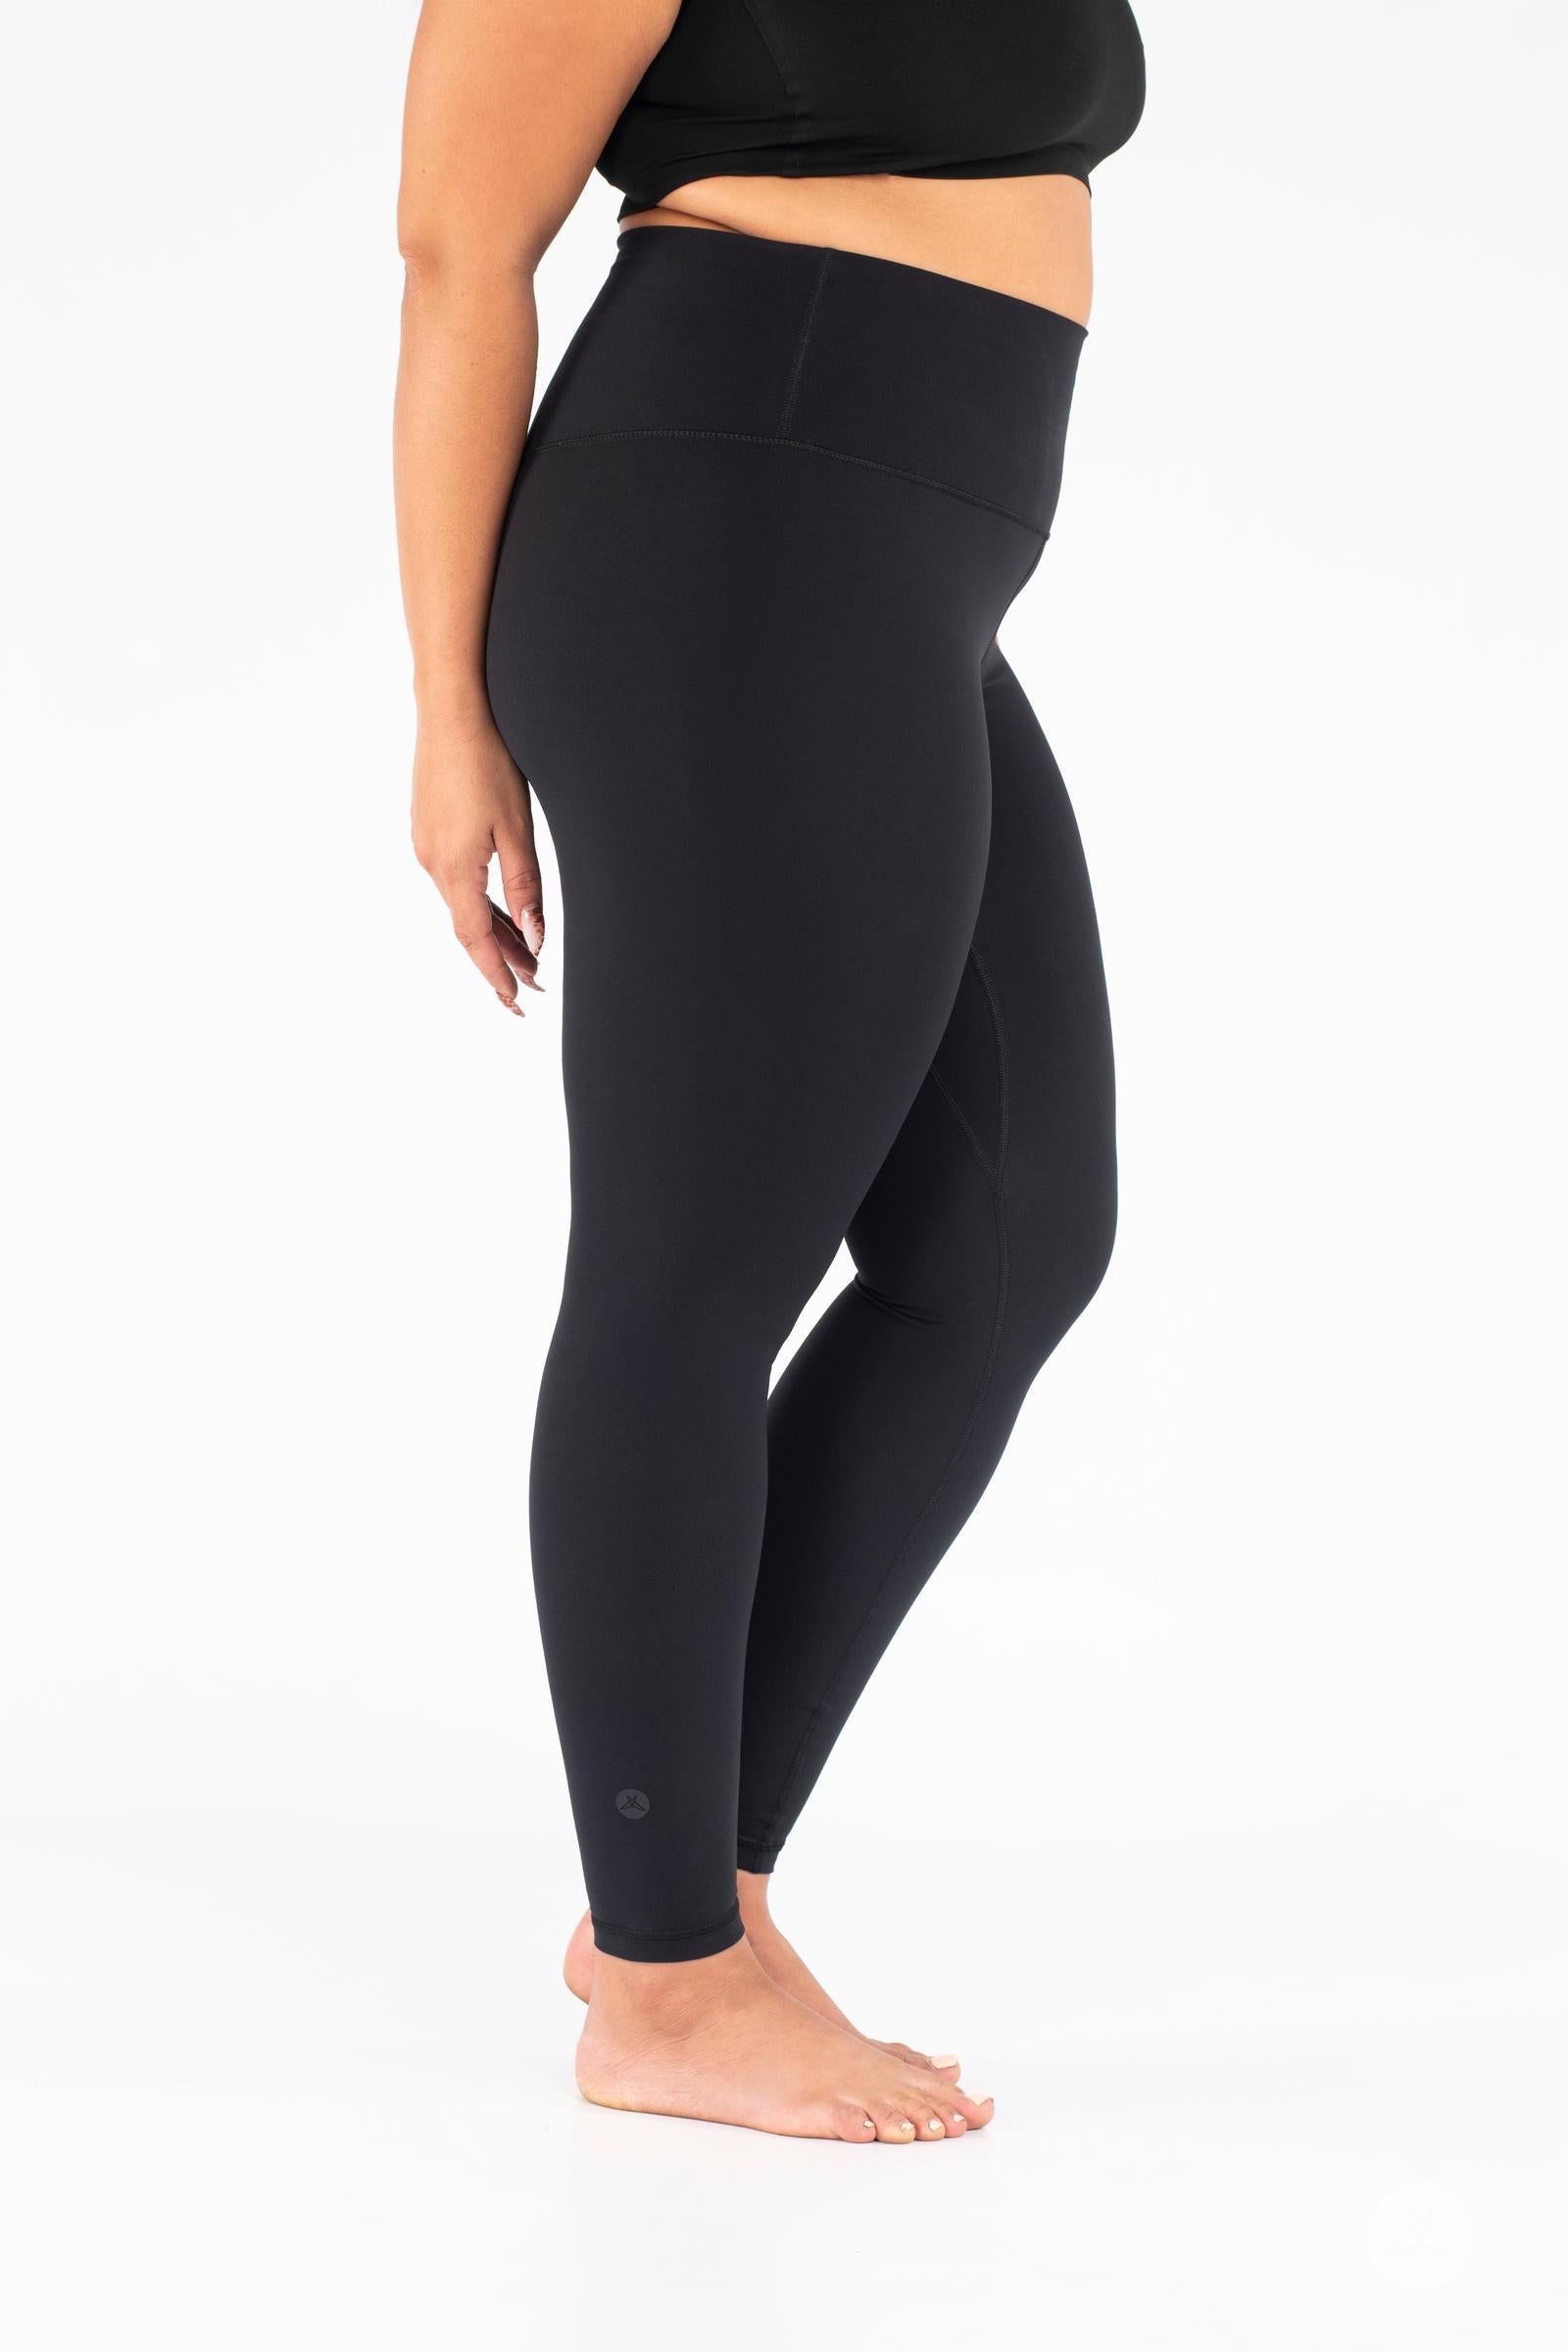 Lululemon Sports Bra Size 10 Black Size M - $23 (70% Off Retail) - From  Jennifer